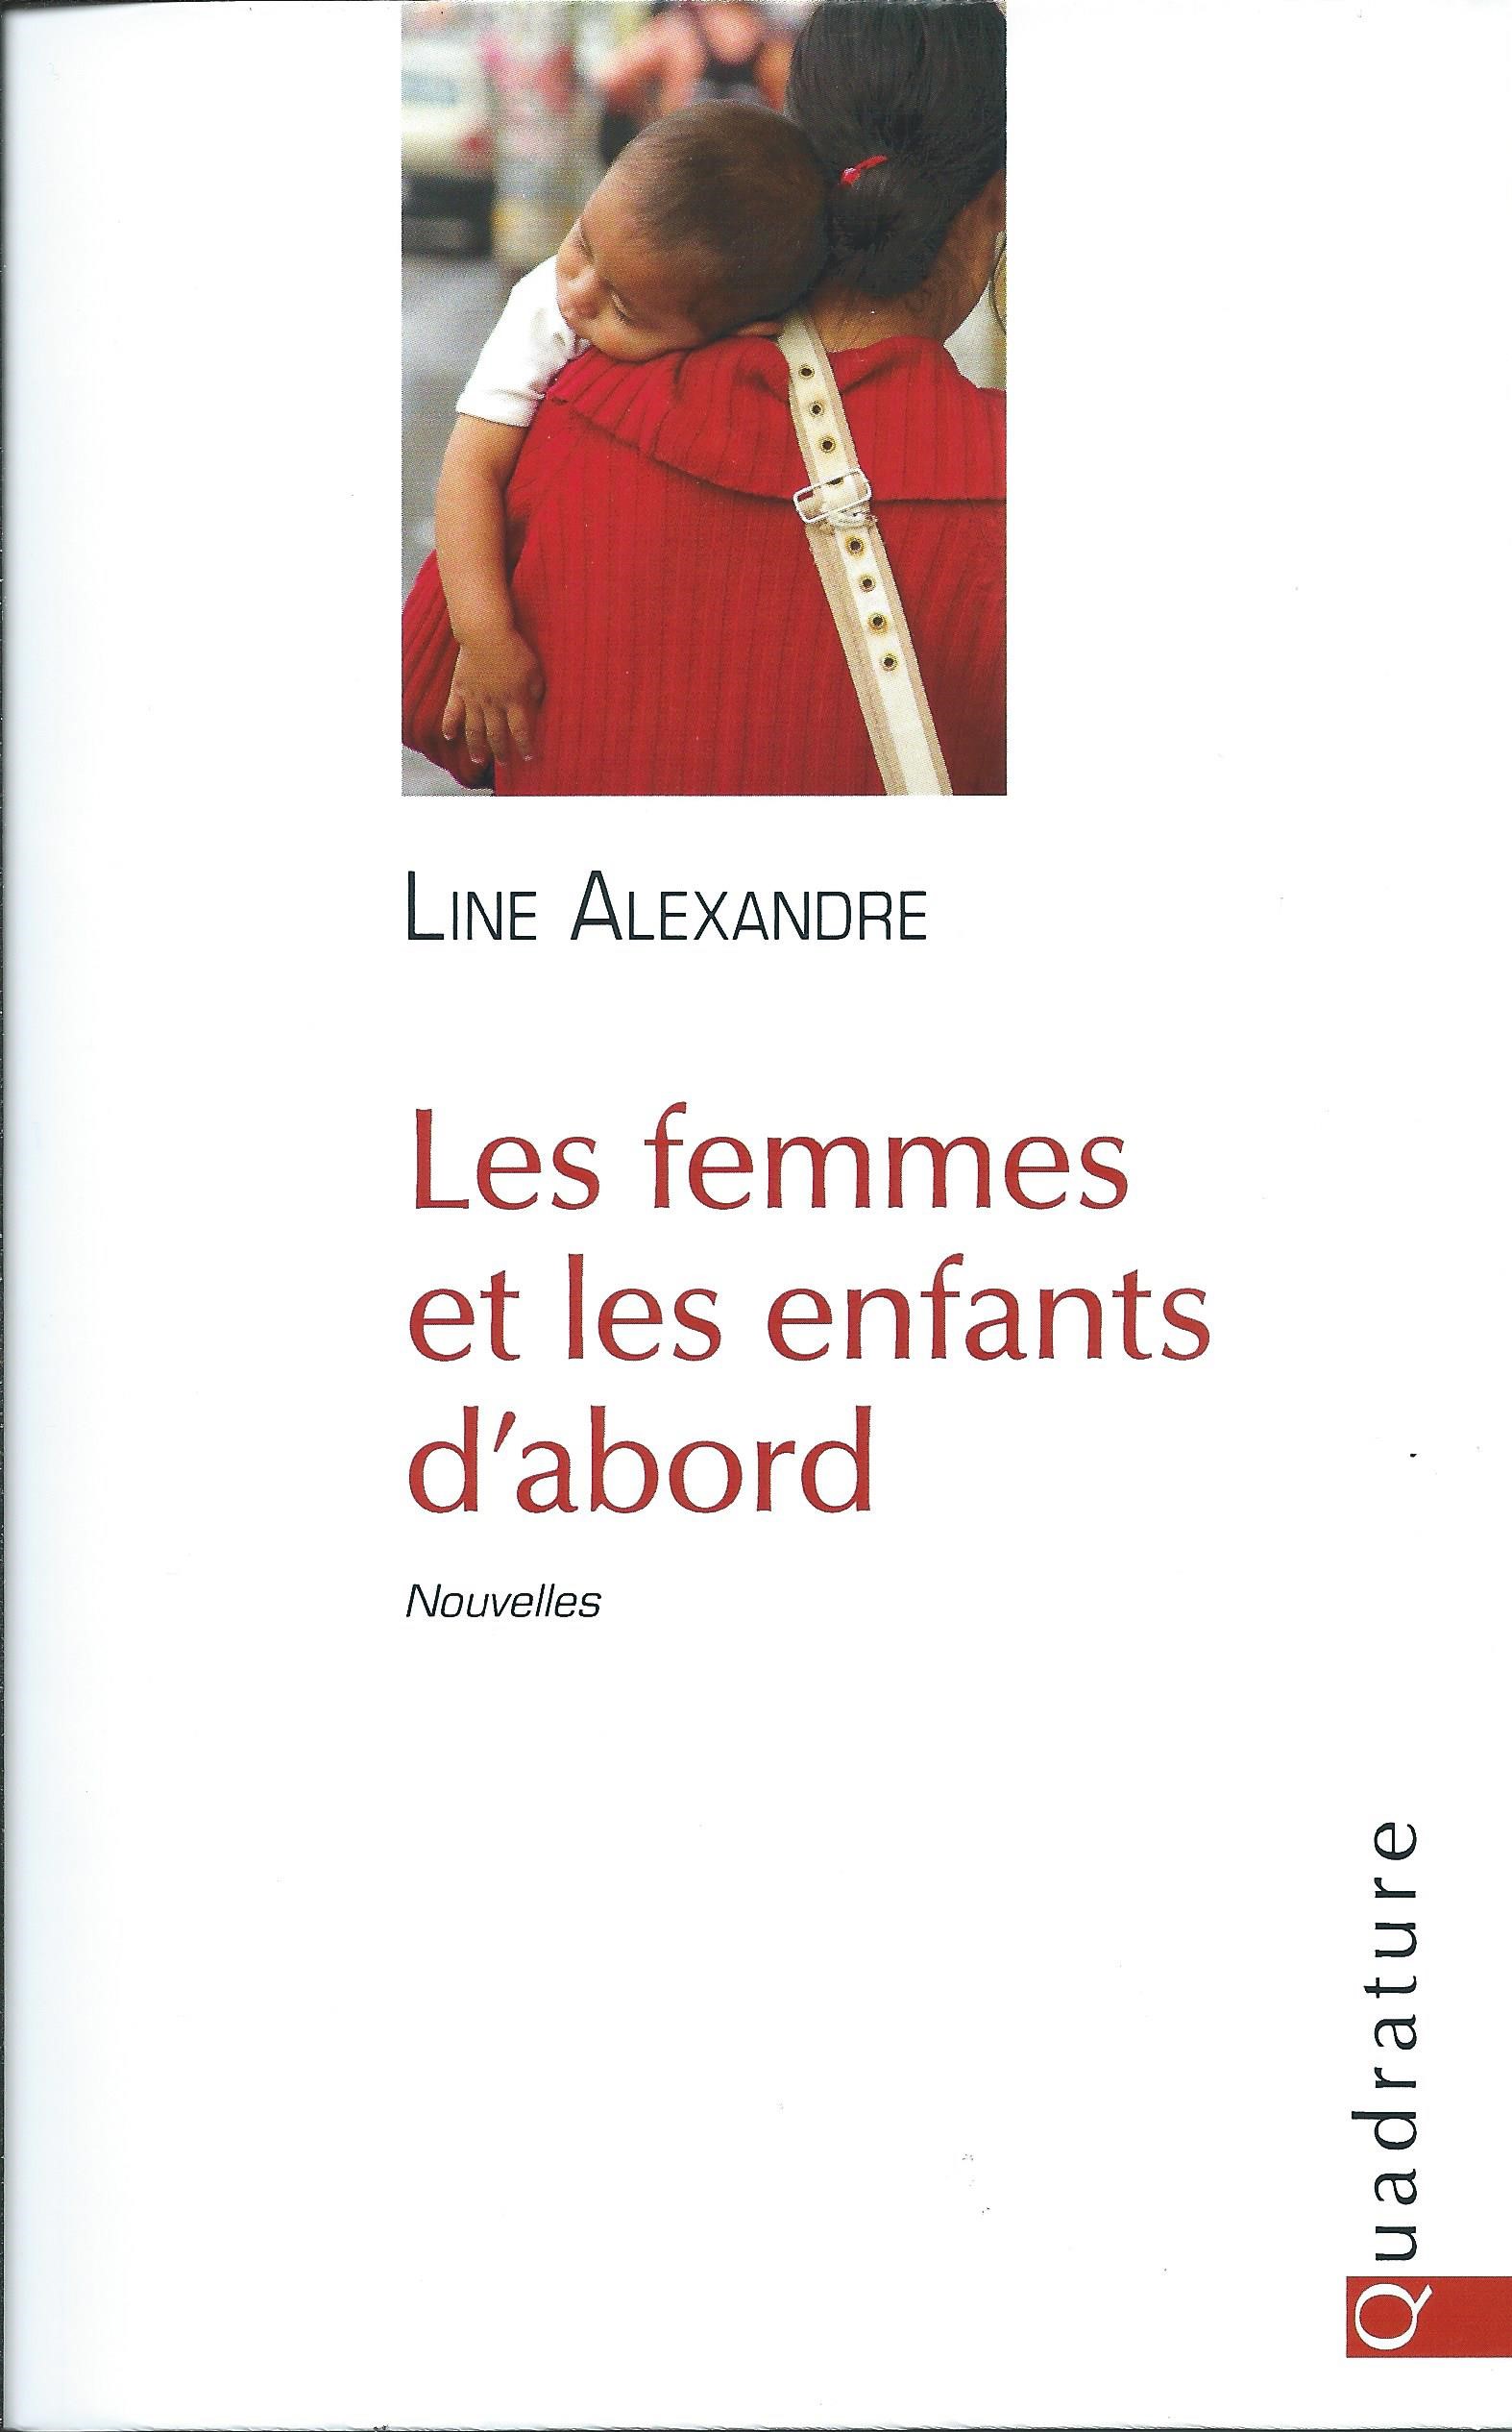 LINE ALEXANDRE - Les femmes et les enfants d'abord